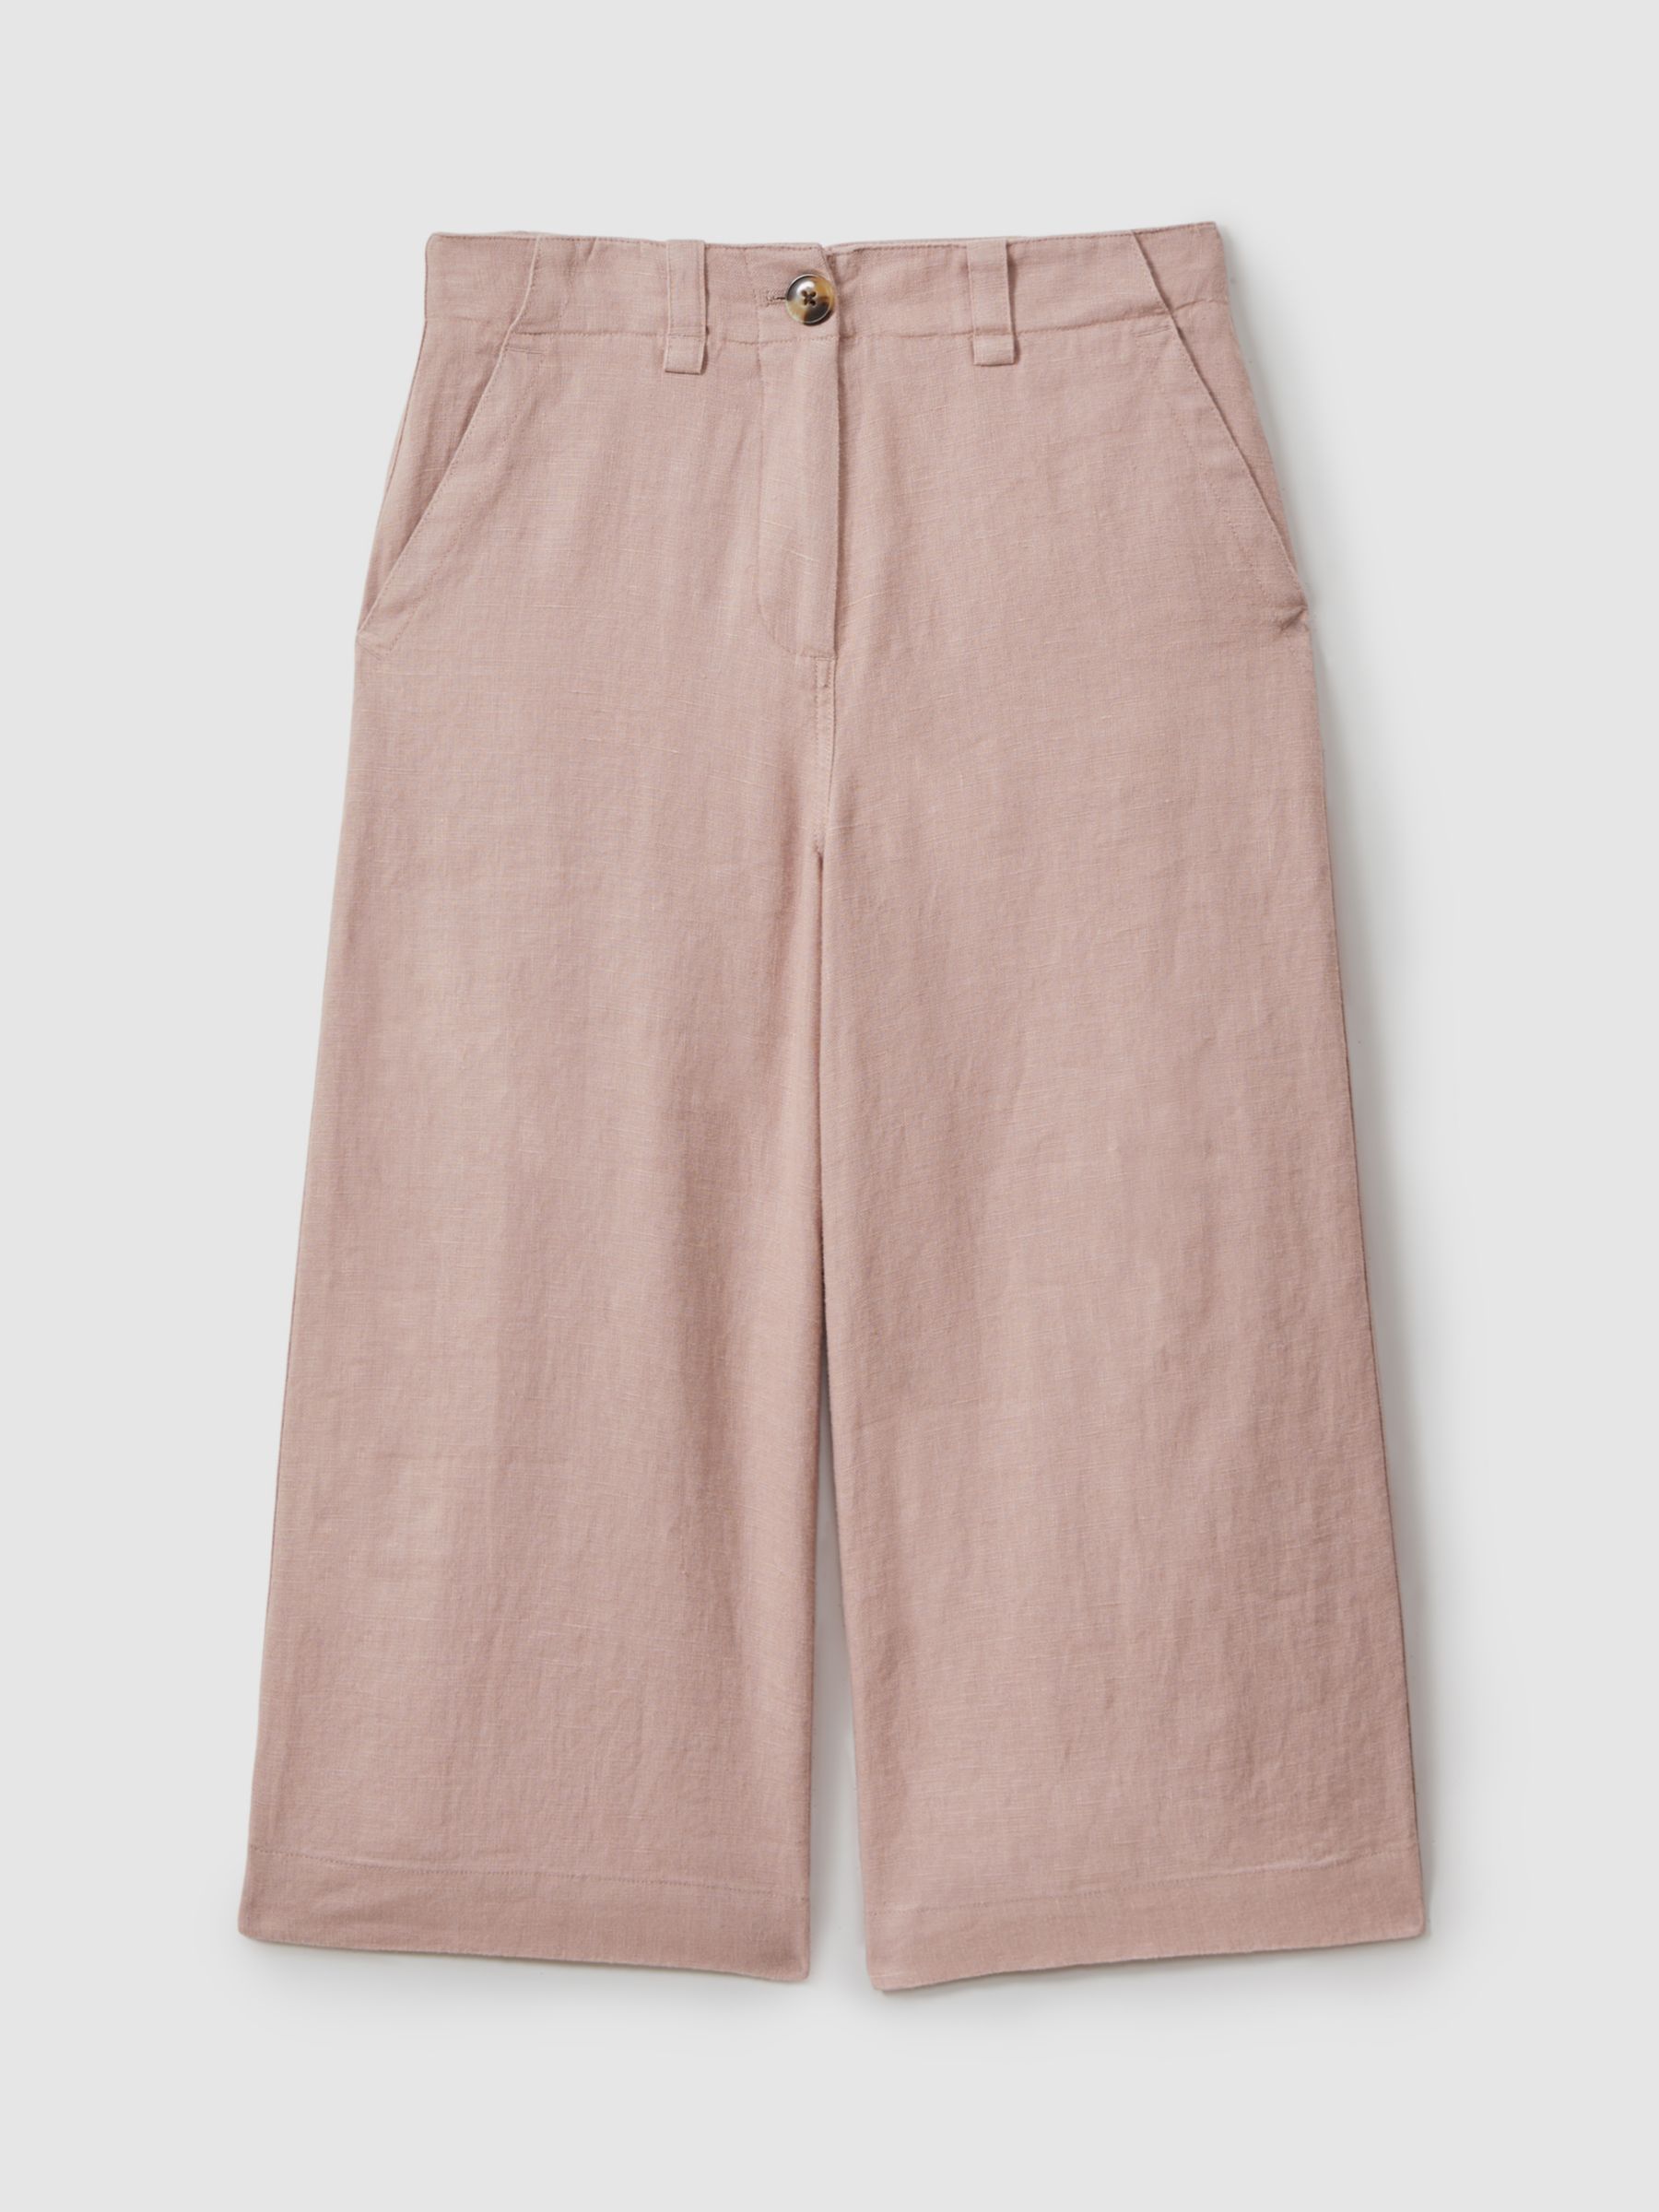 Reiss Kids' Dani Linen Trousers, Pink, 4-5 years